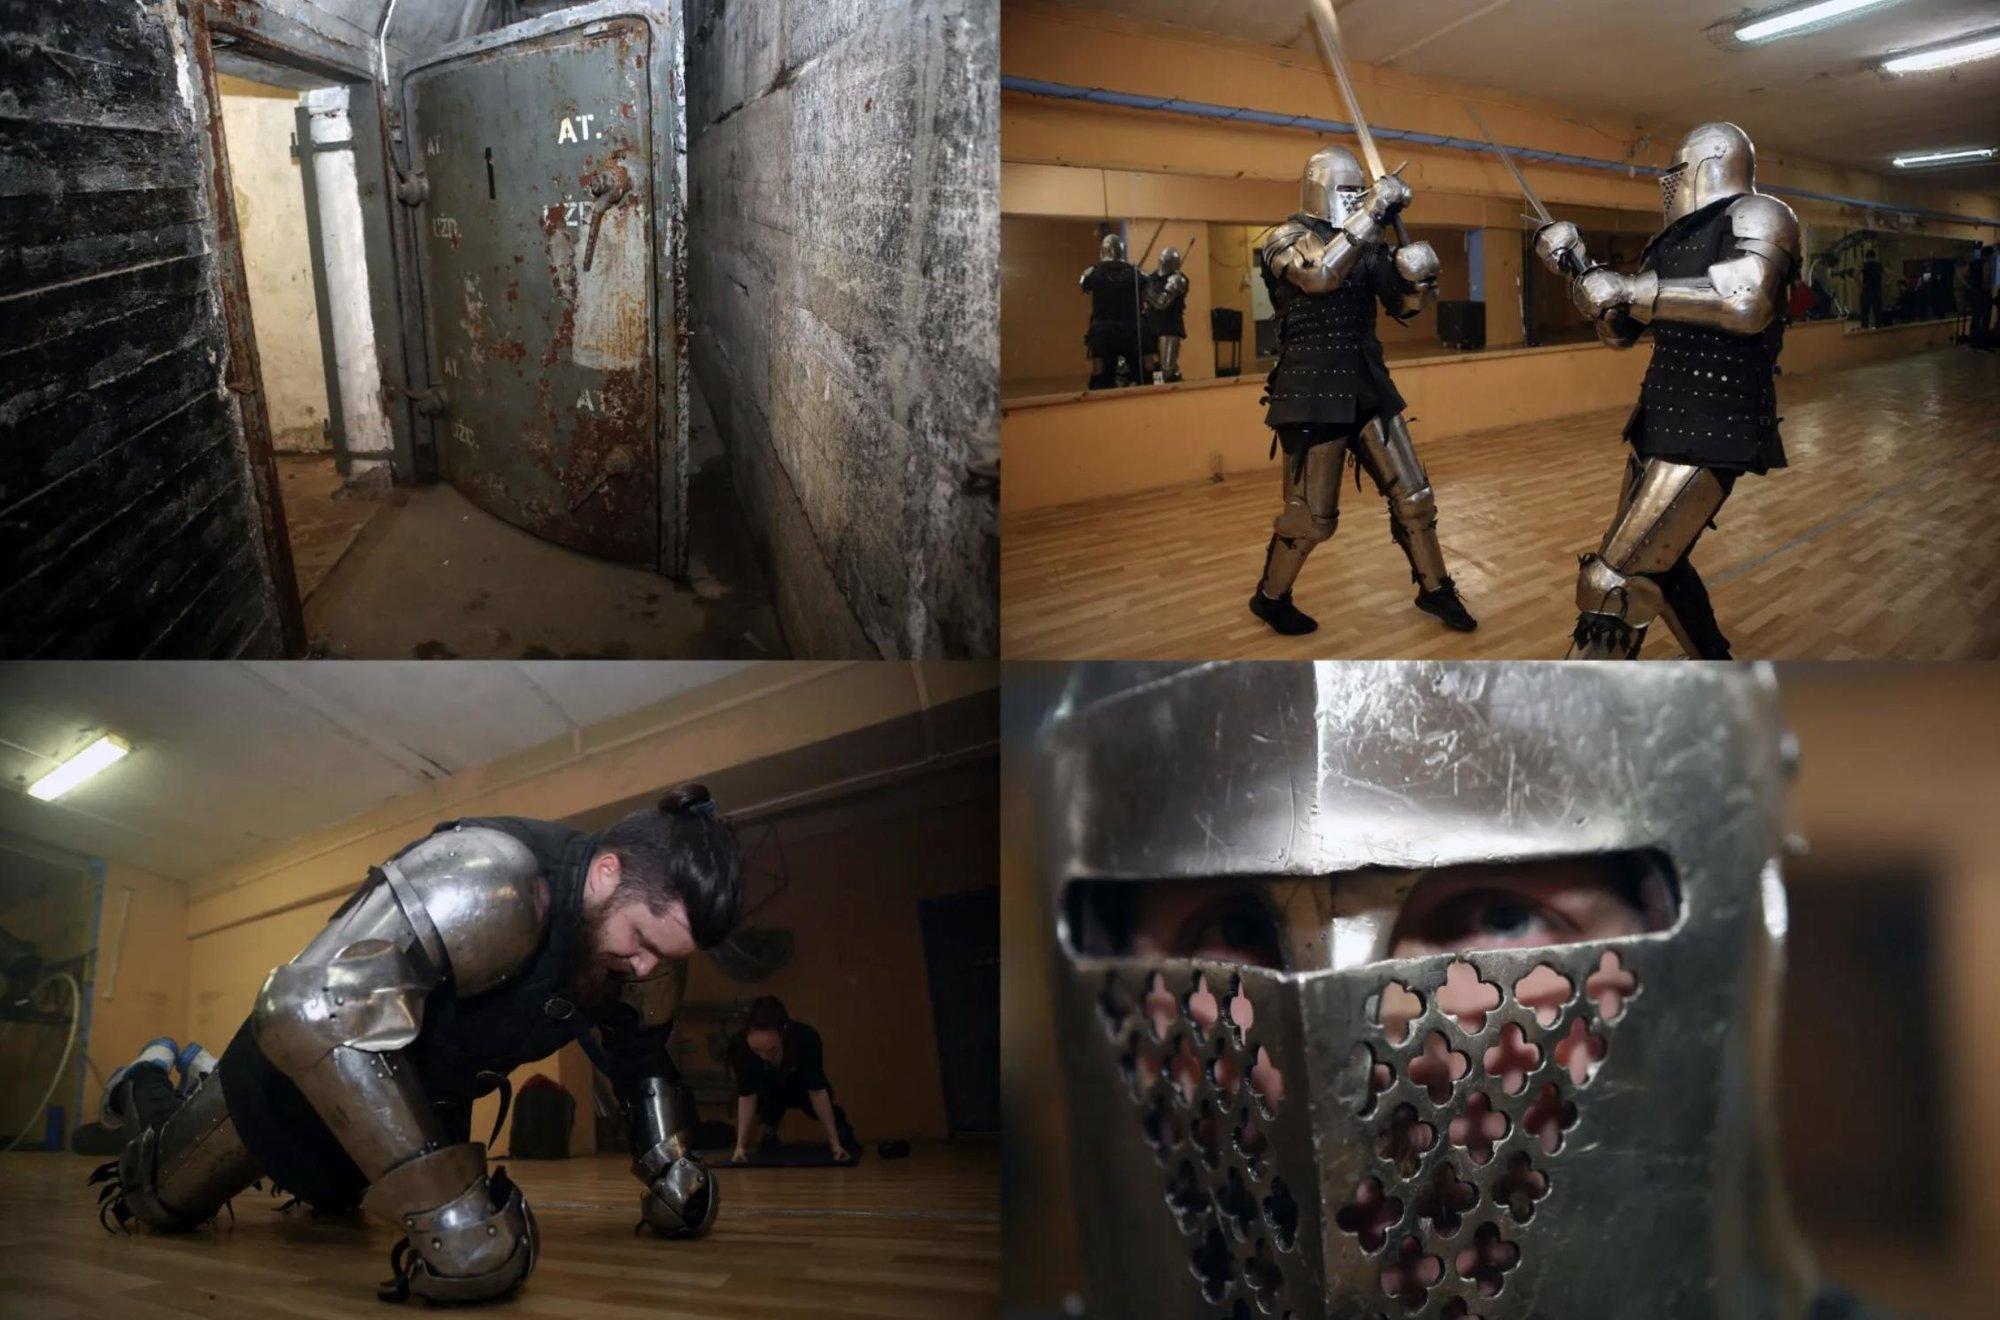 Kauno viduramžių riteriai kovoms ruošiasi atominiame bunkeryje